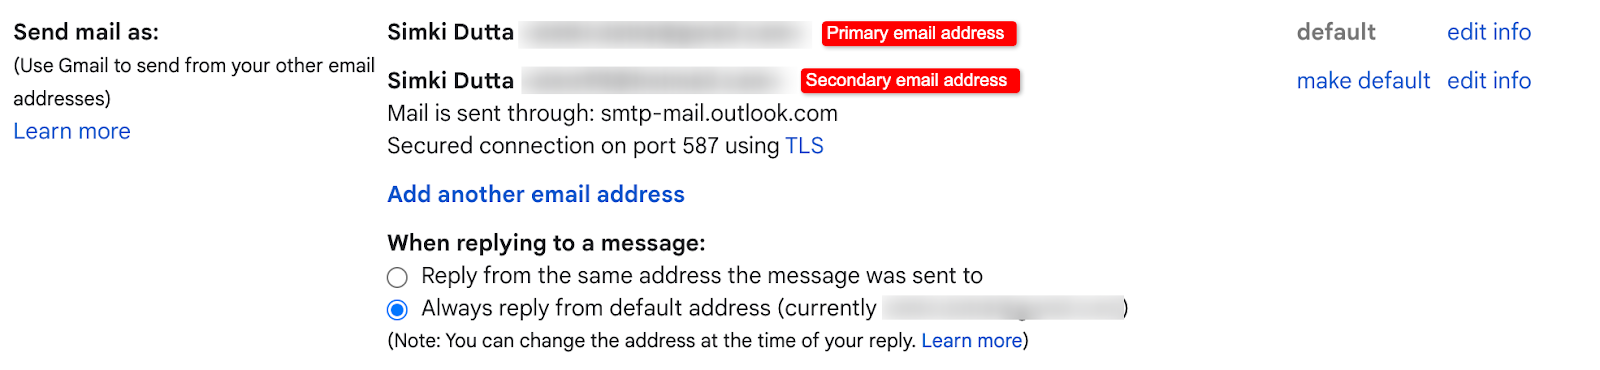 gmail-alias-send-mail-as